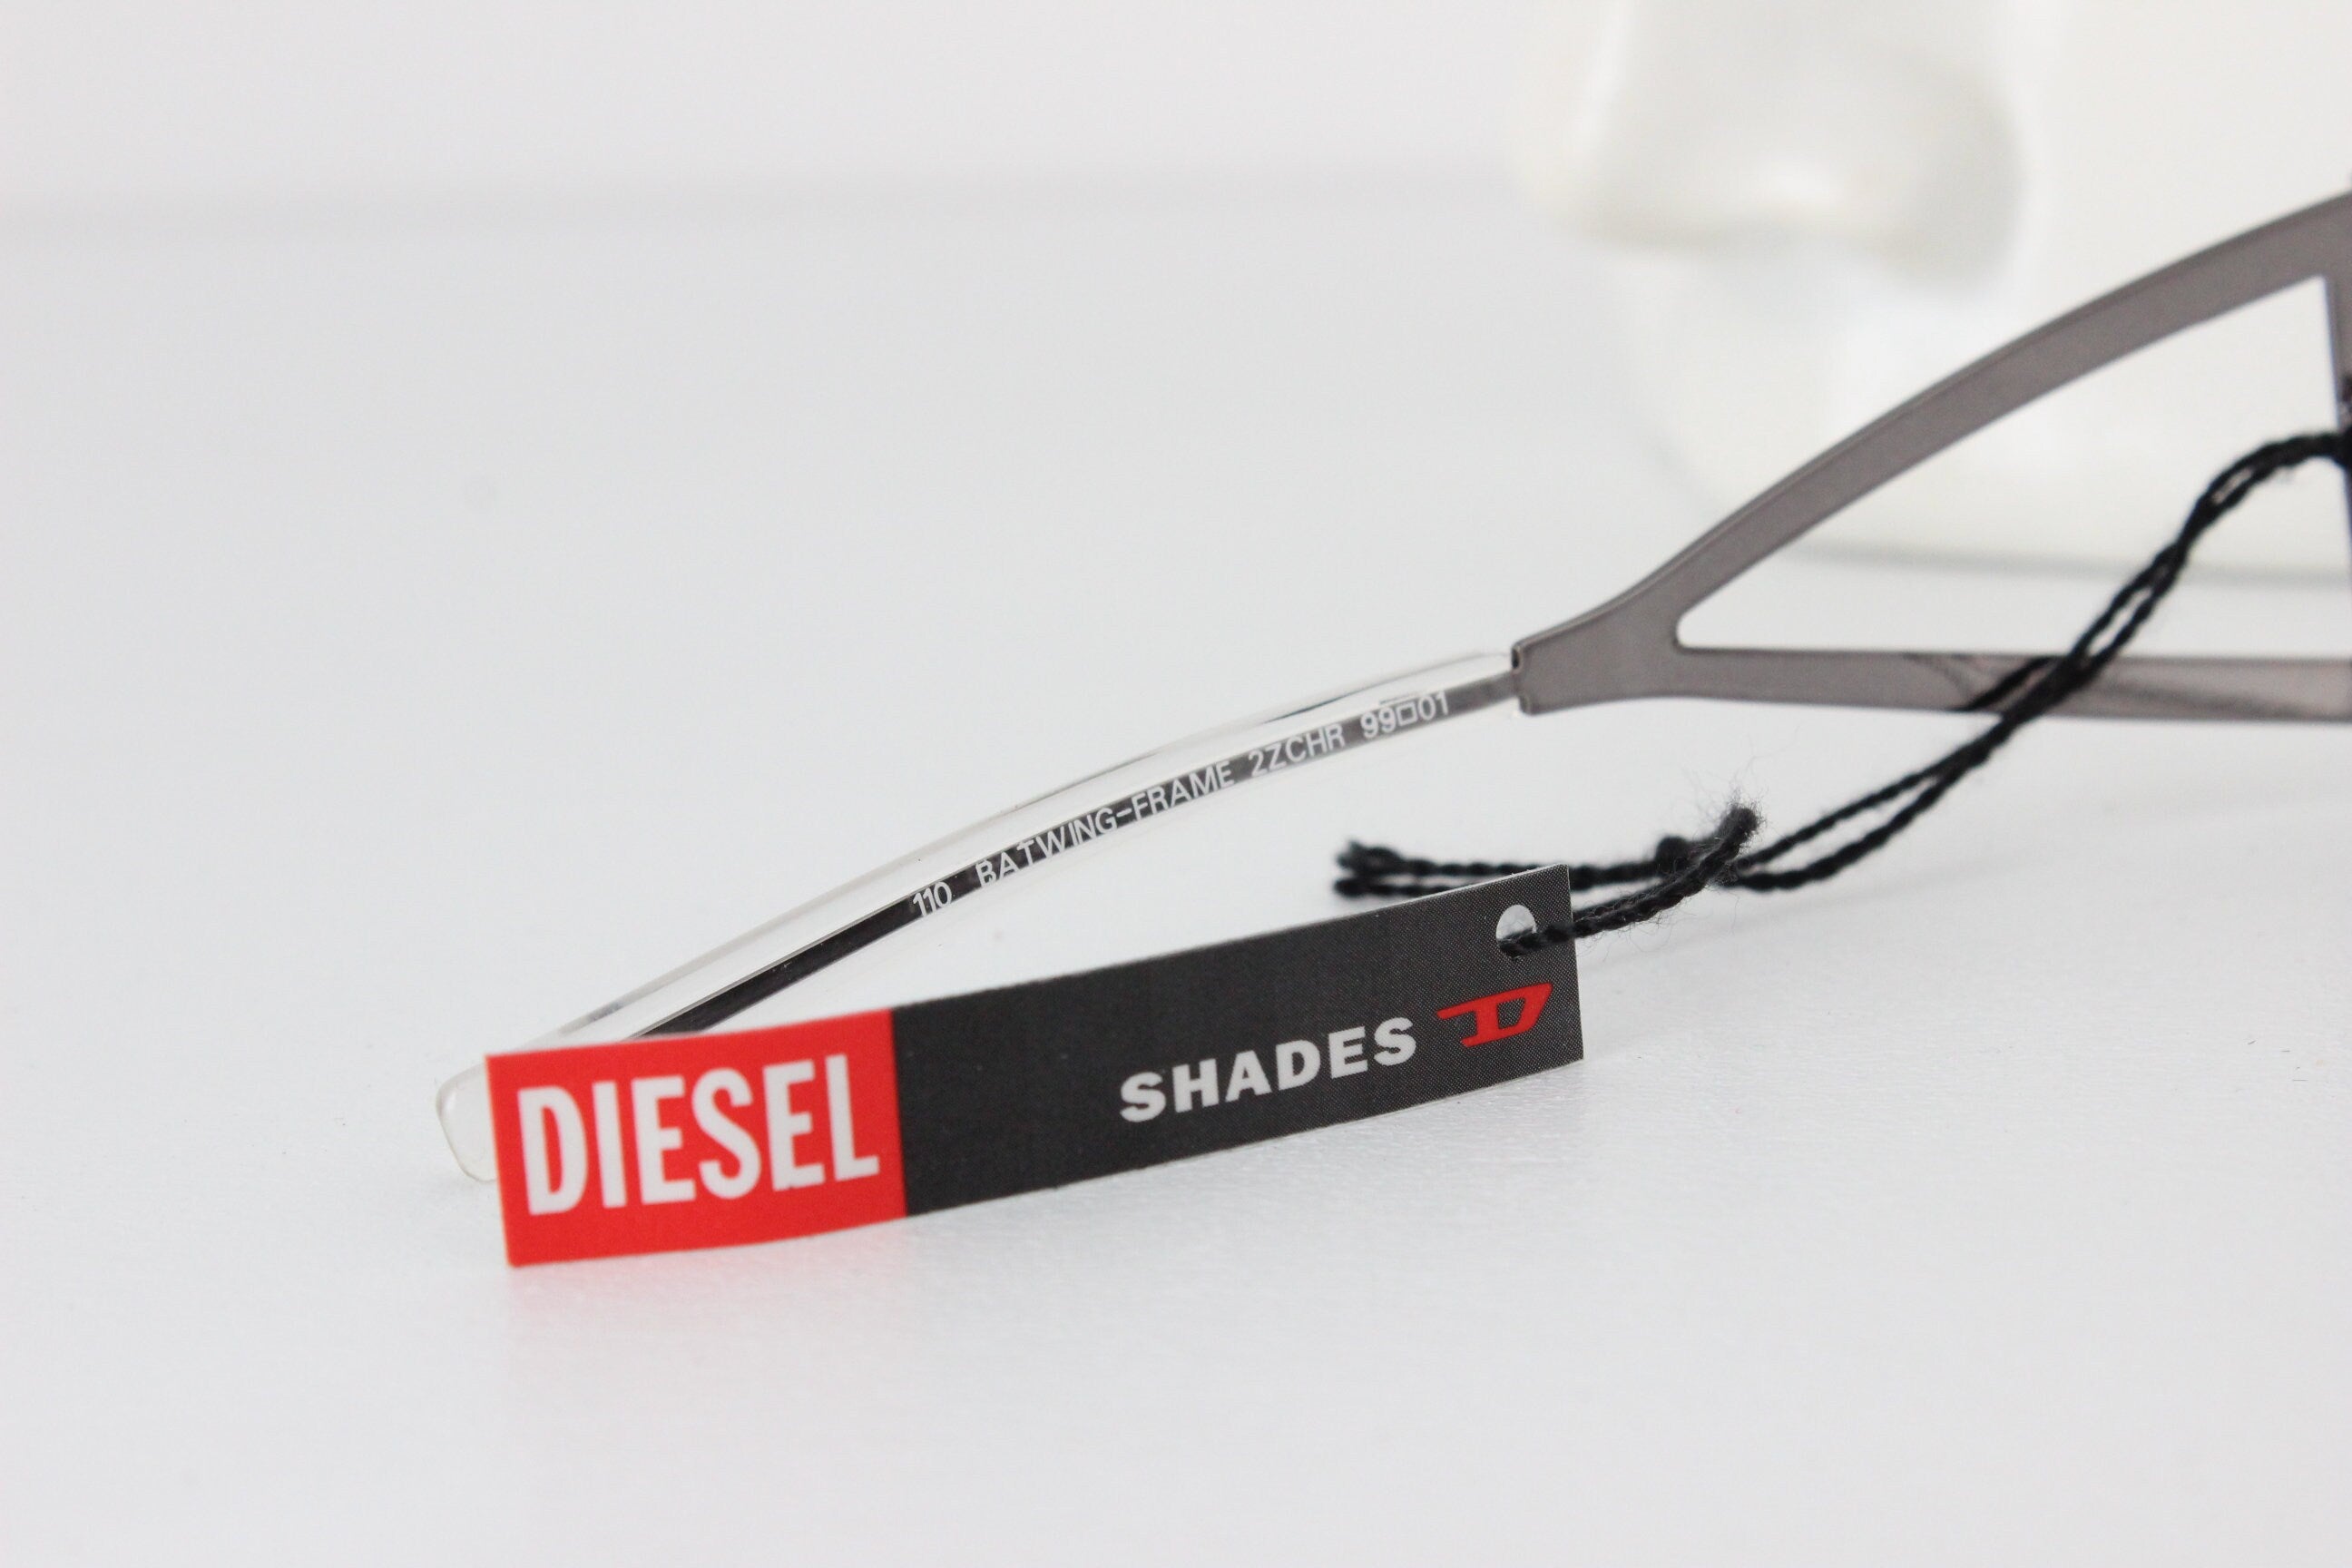 Y2K Diesel Shield Sunglasses